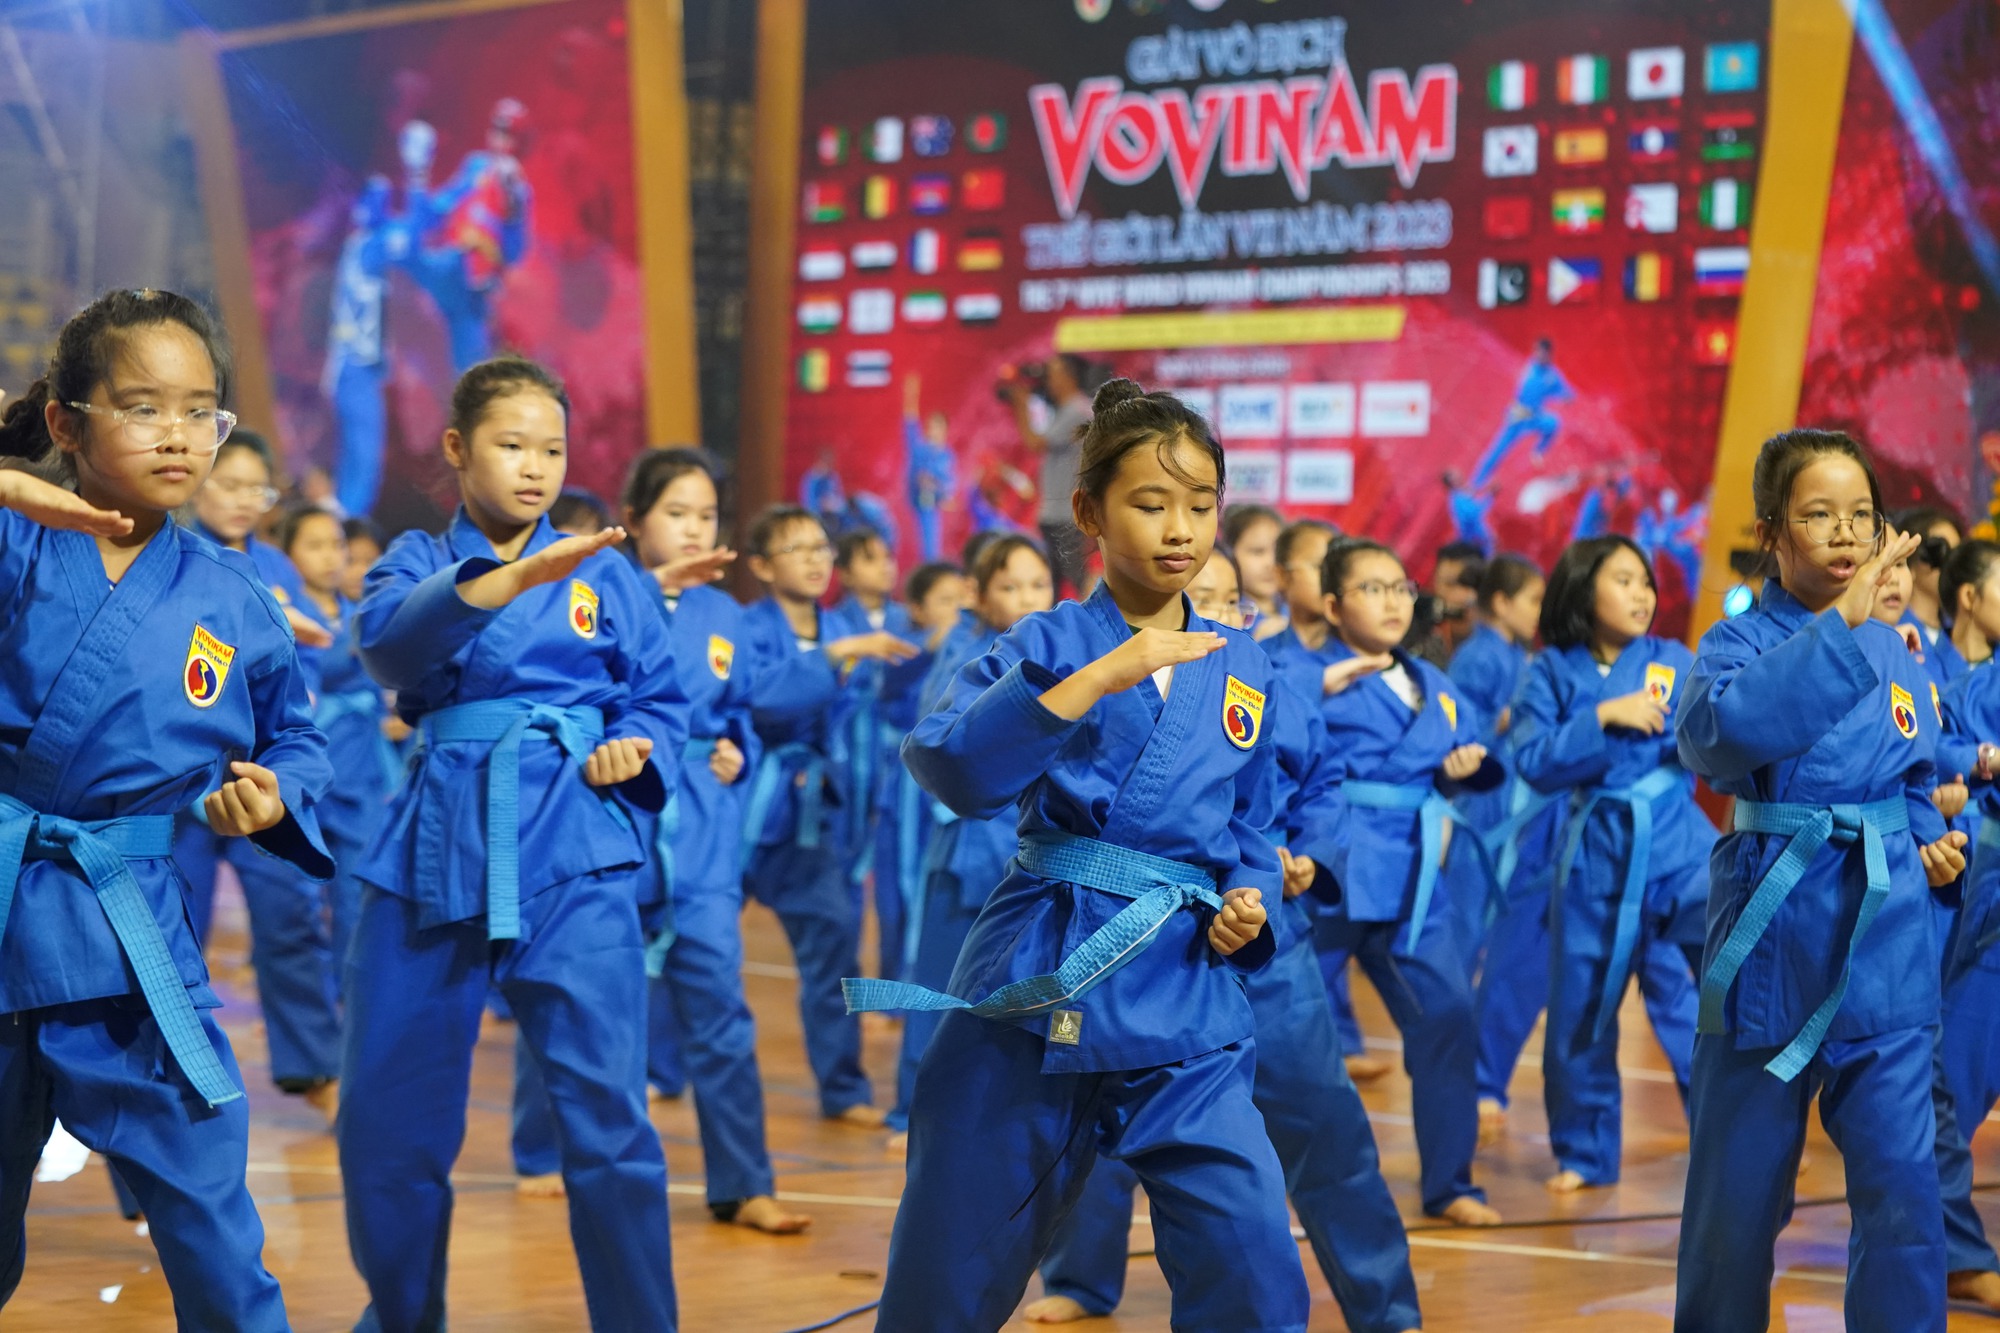 CLIP: Những màn biểu diễn ấn tượng trong lễ khai mạc Giải Vovinam thế giới lần 7-2023 - Ảnh 10.